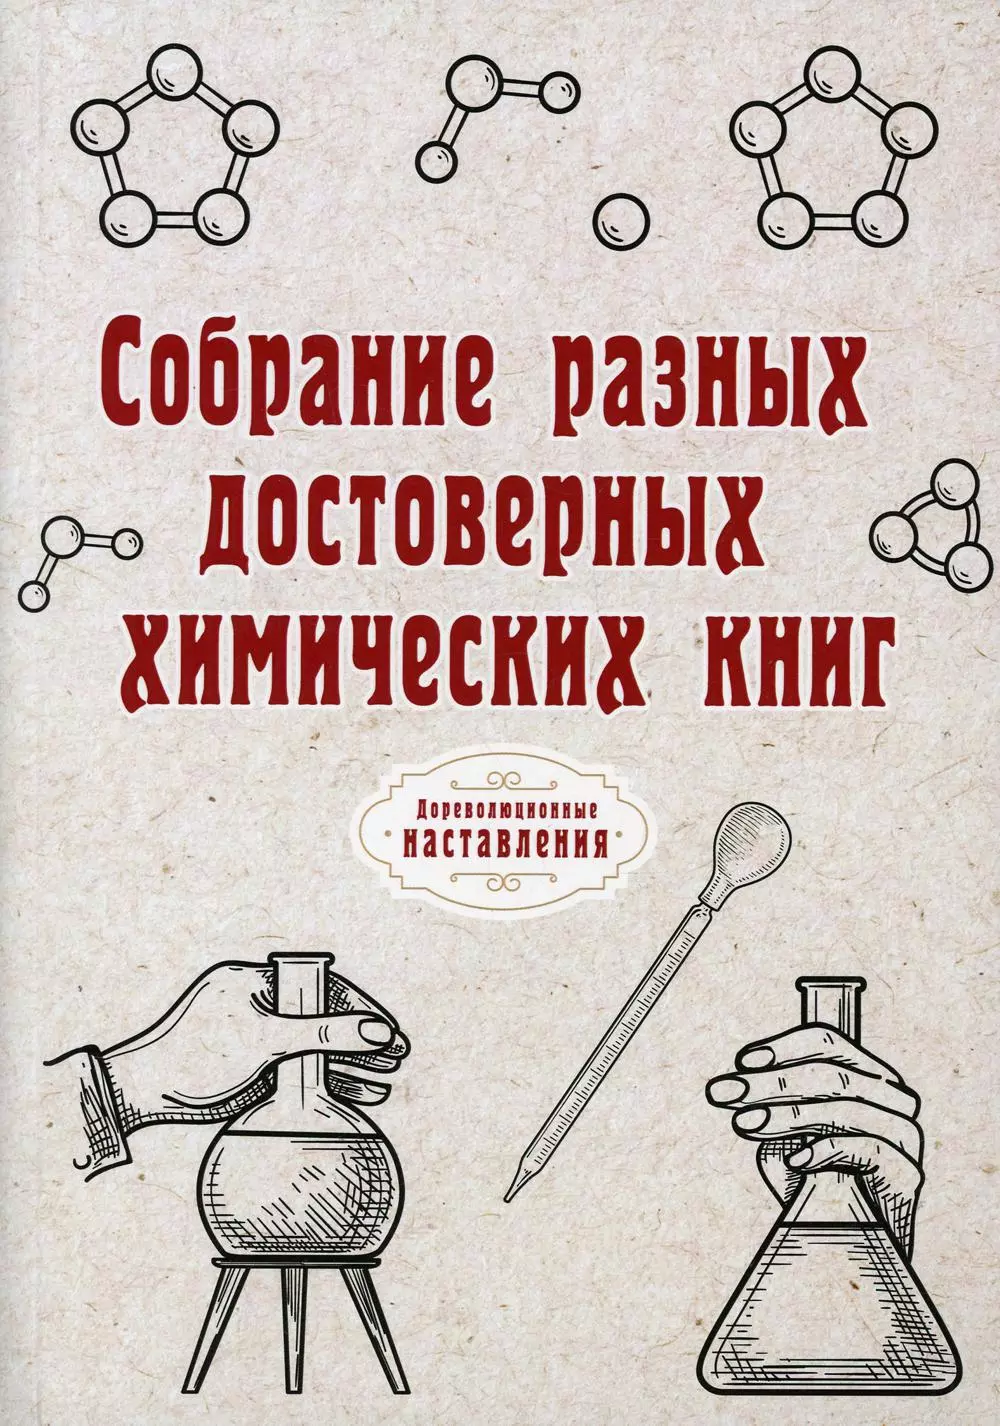 Атряхайлова Н. Собрание разных достоверных химических книг (Репринт)